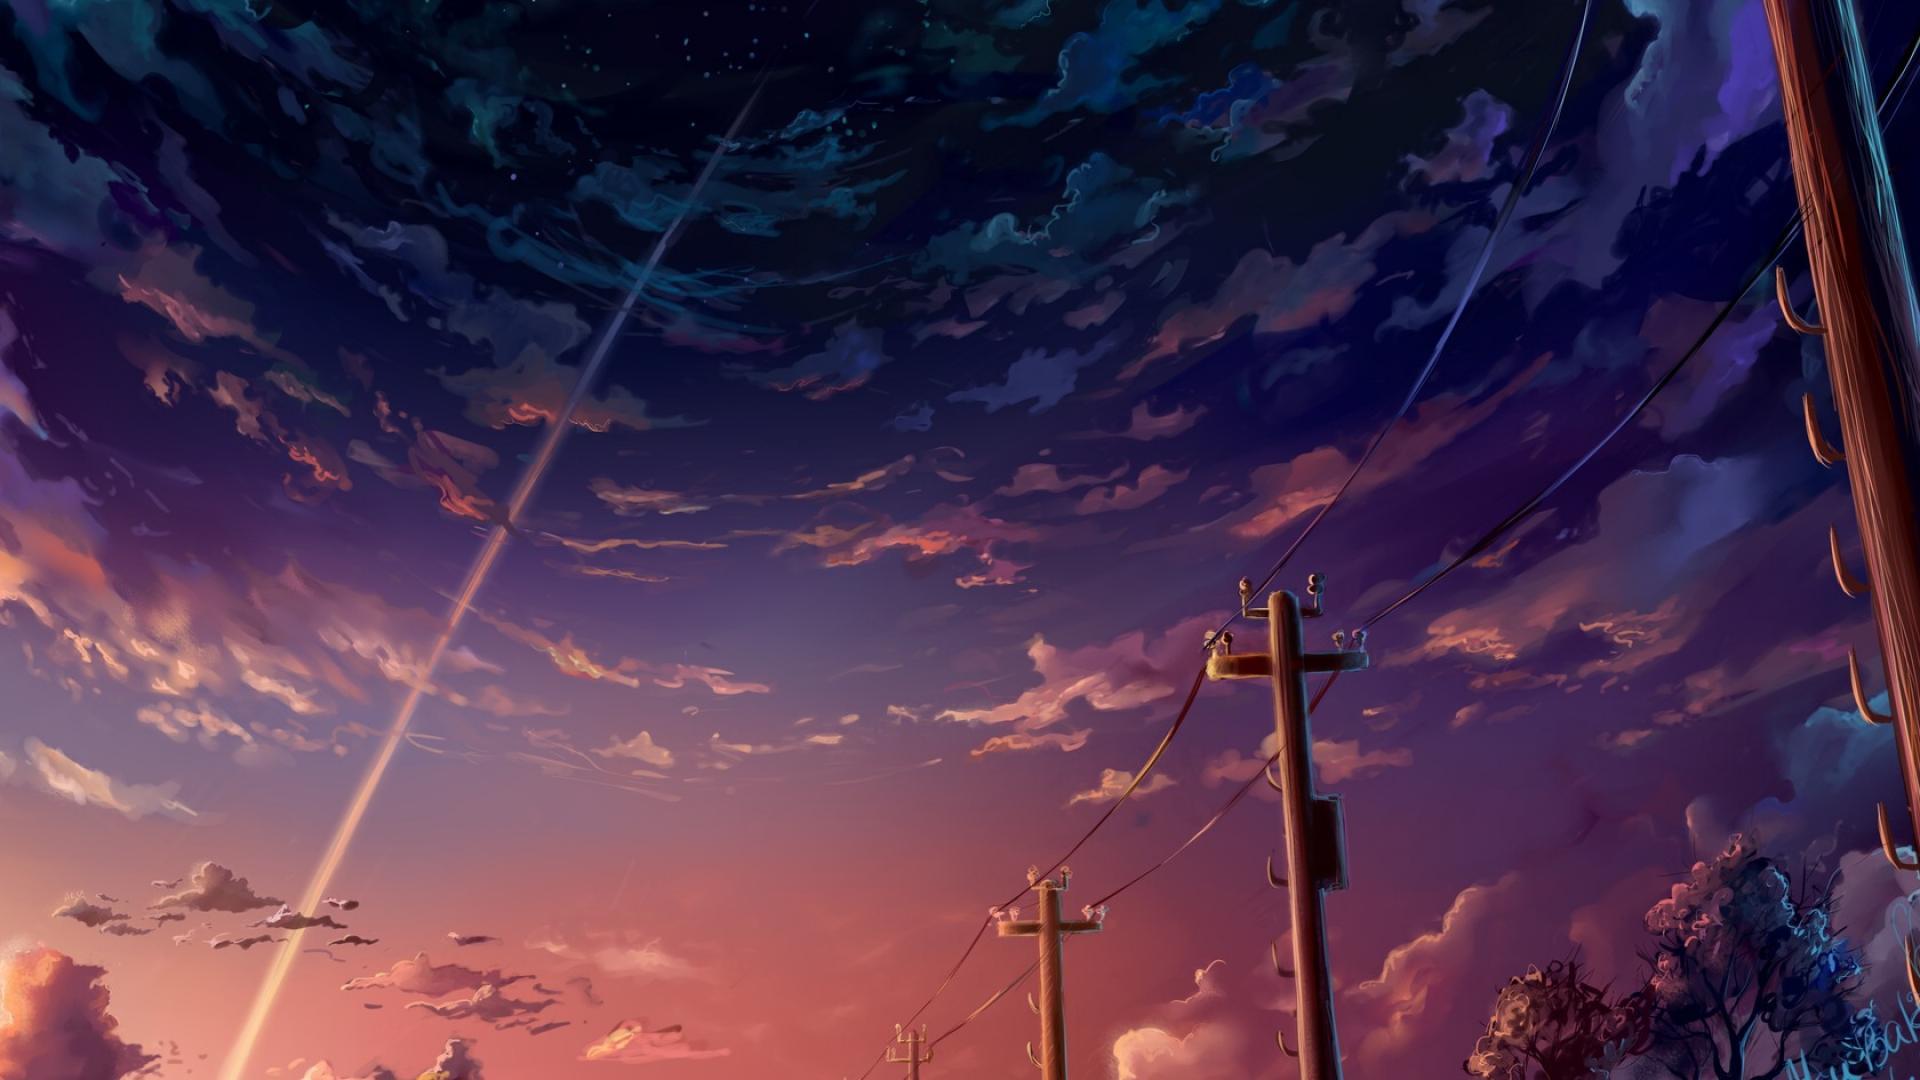 imagenes fonds d'écran anime,ciel,nuage,bleu,atmosphère,rémanence